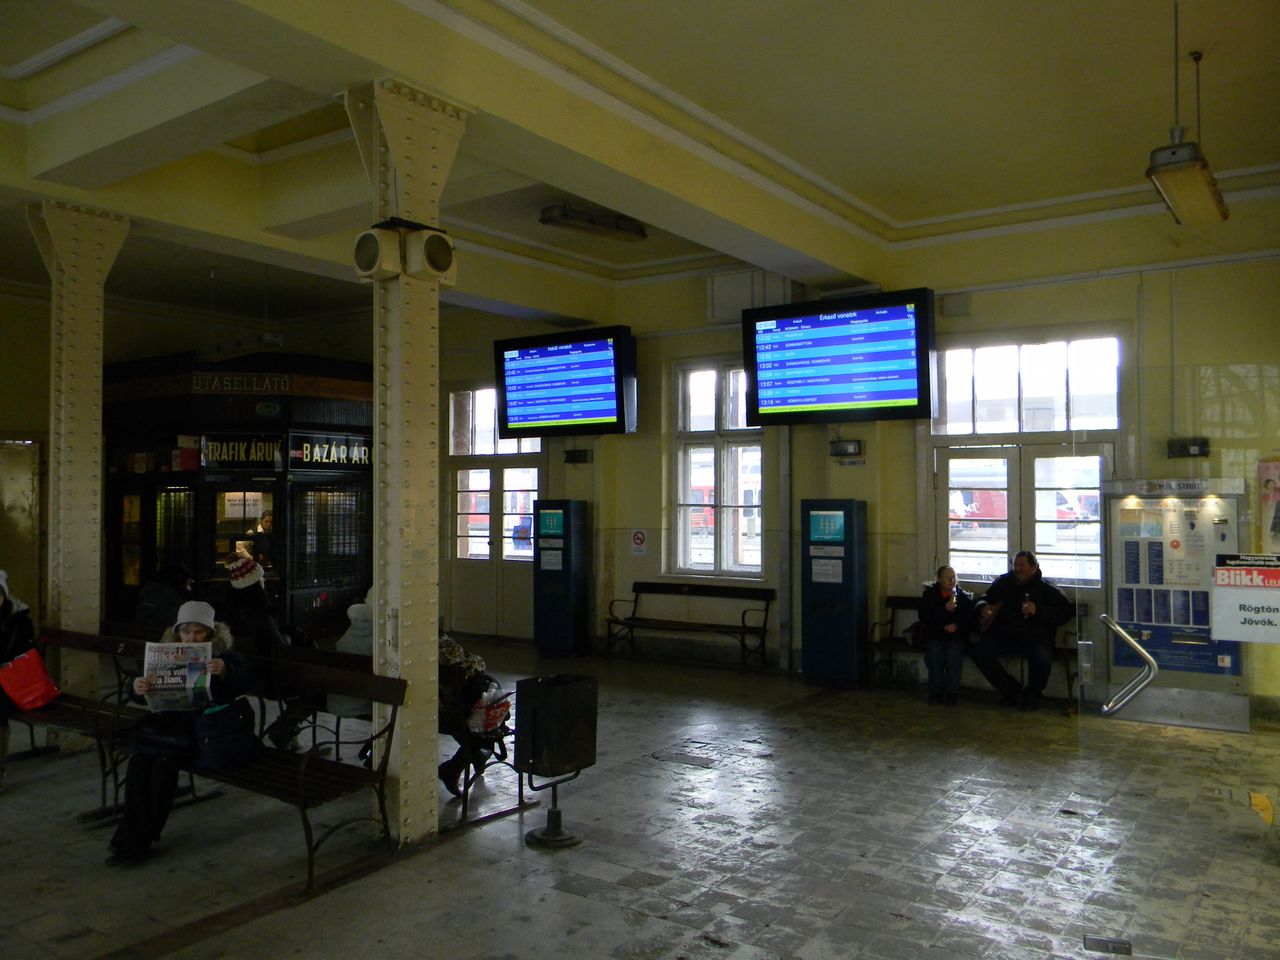 A fővárosi pályaudvarok legarchaikusabb hangulatú váróterme – az időutazásba révedésből a korszerű utastájékoztató monitor rázza fel az erre tévedőt. A közvetlen vágánykapcsolat az első, 1986-ban átadott aluljáró megléte óta szünetel